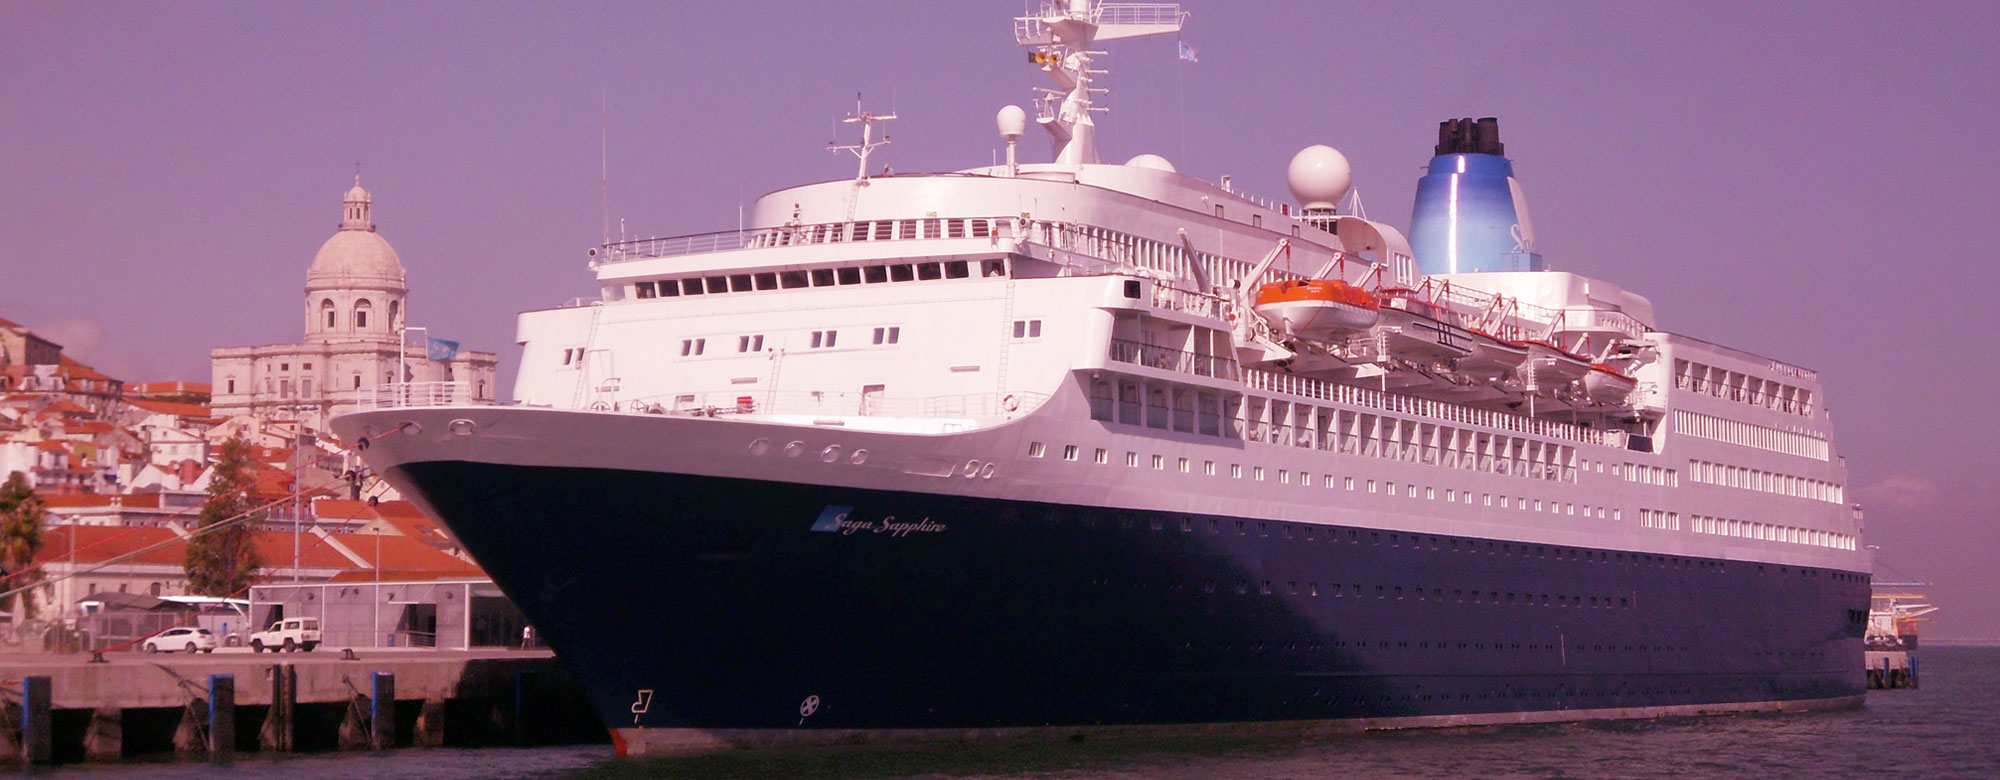 saga sapphire Cruise ship